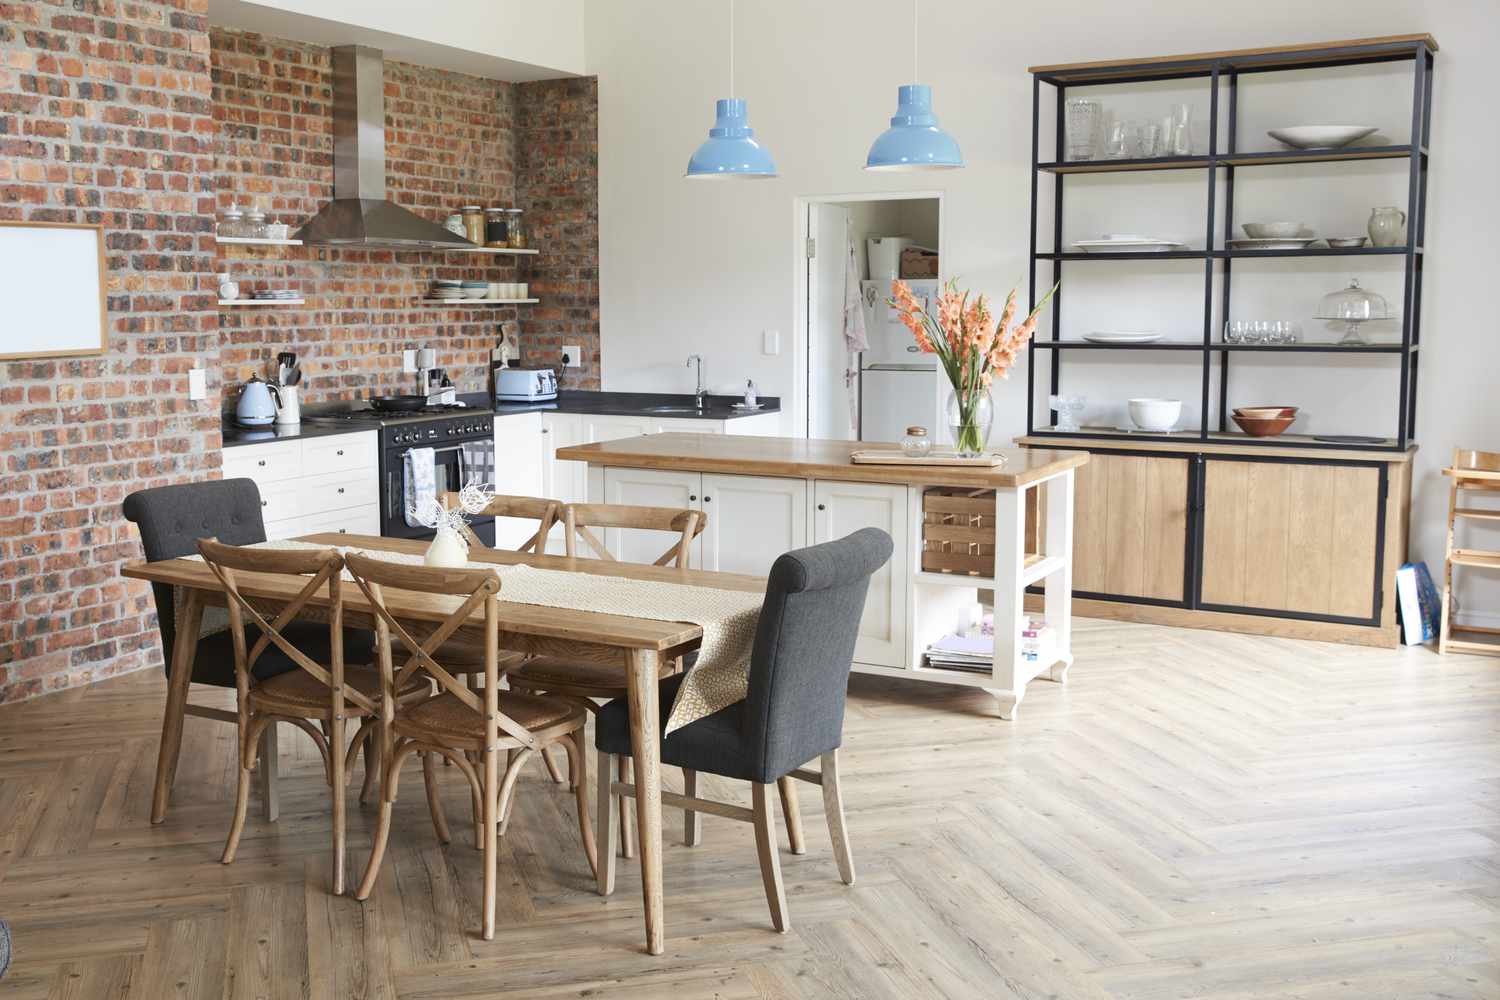 Stilvolles Wohninterieur mit offener Küche und Essbereich mit Ziegelstein-Akzentwand